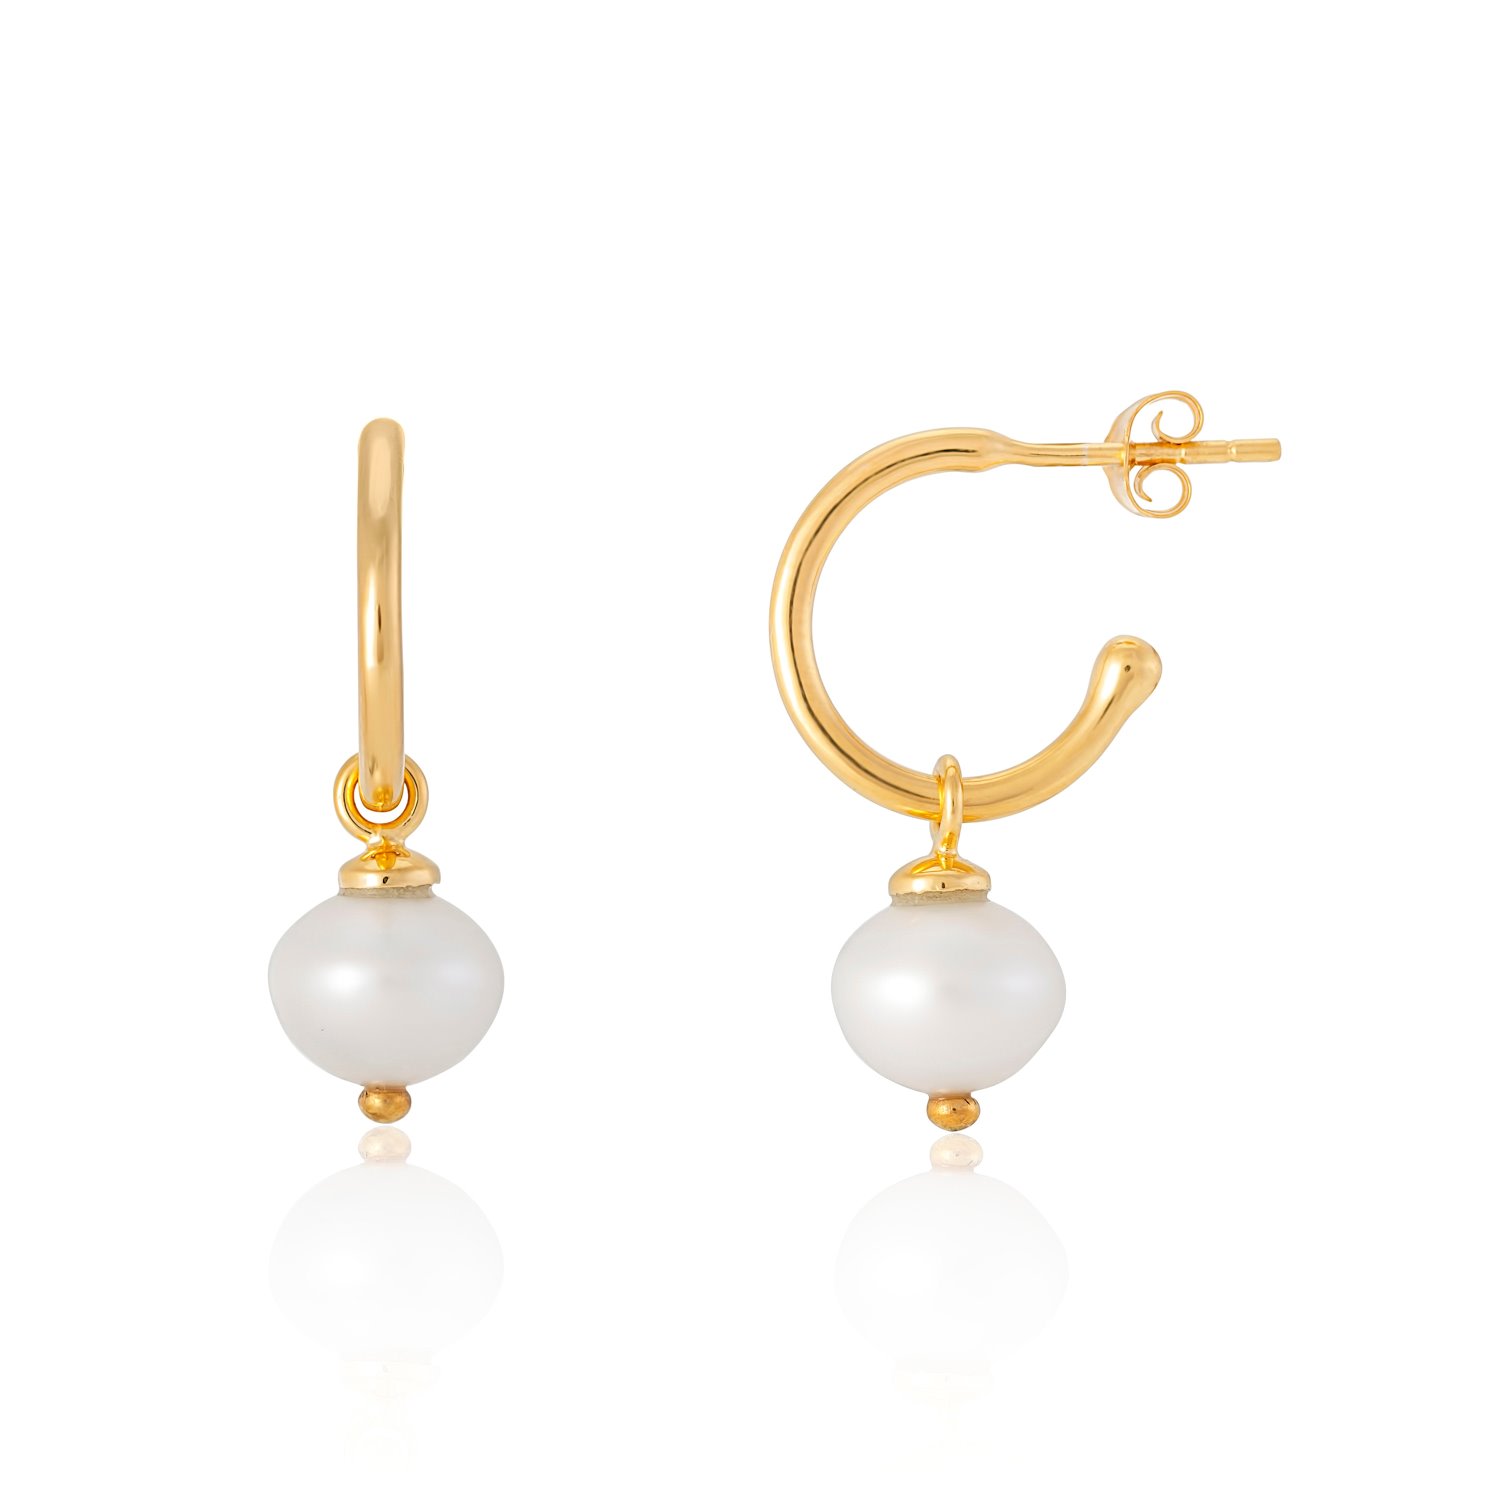 Auree Jewellery Women's White / Gold Manhattan Gold & Freshwater Pearl Interchangeable Hoop Earrings